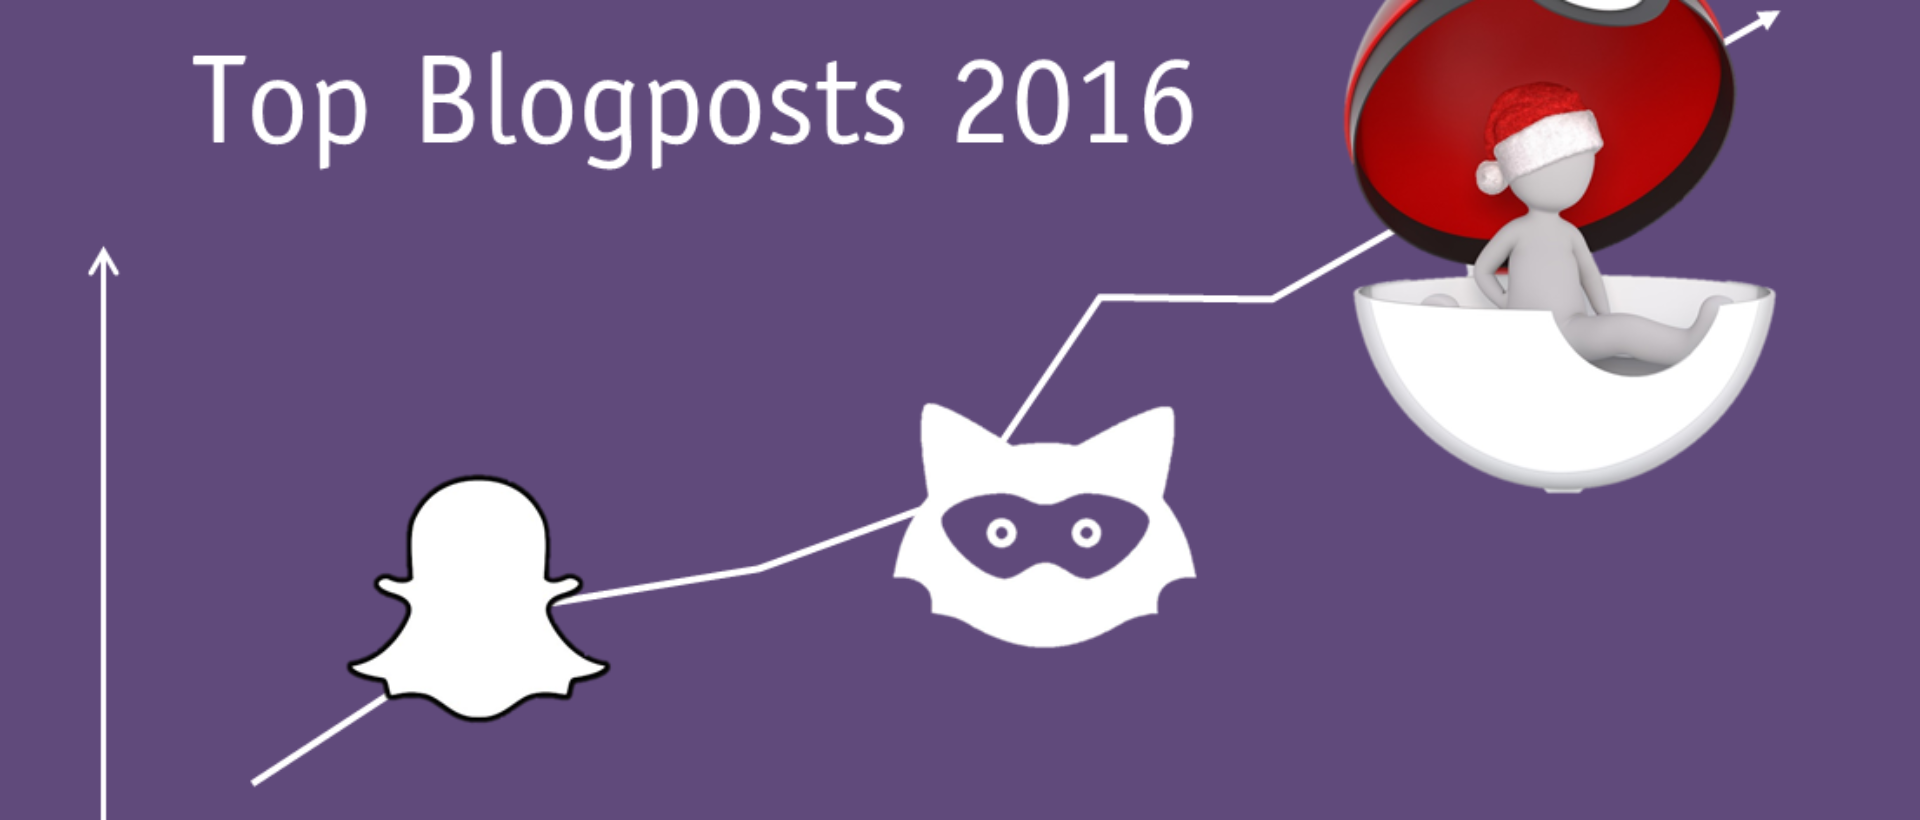 Top Blogposts 2016